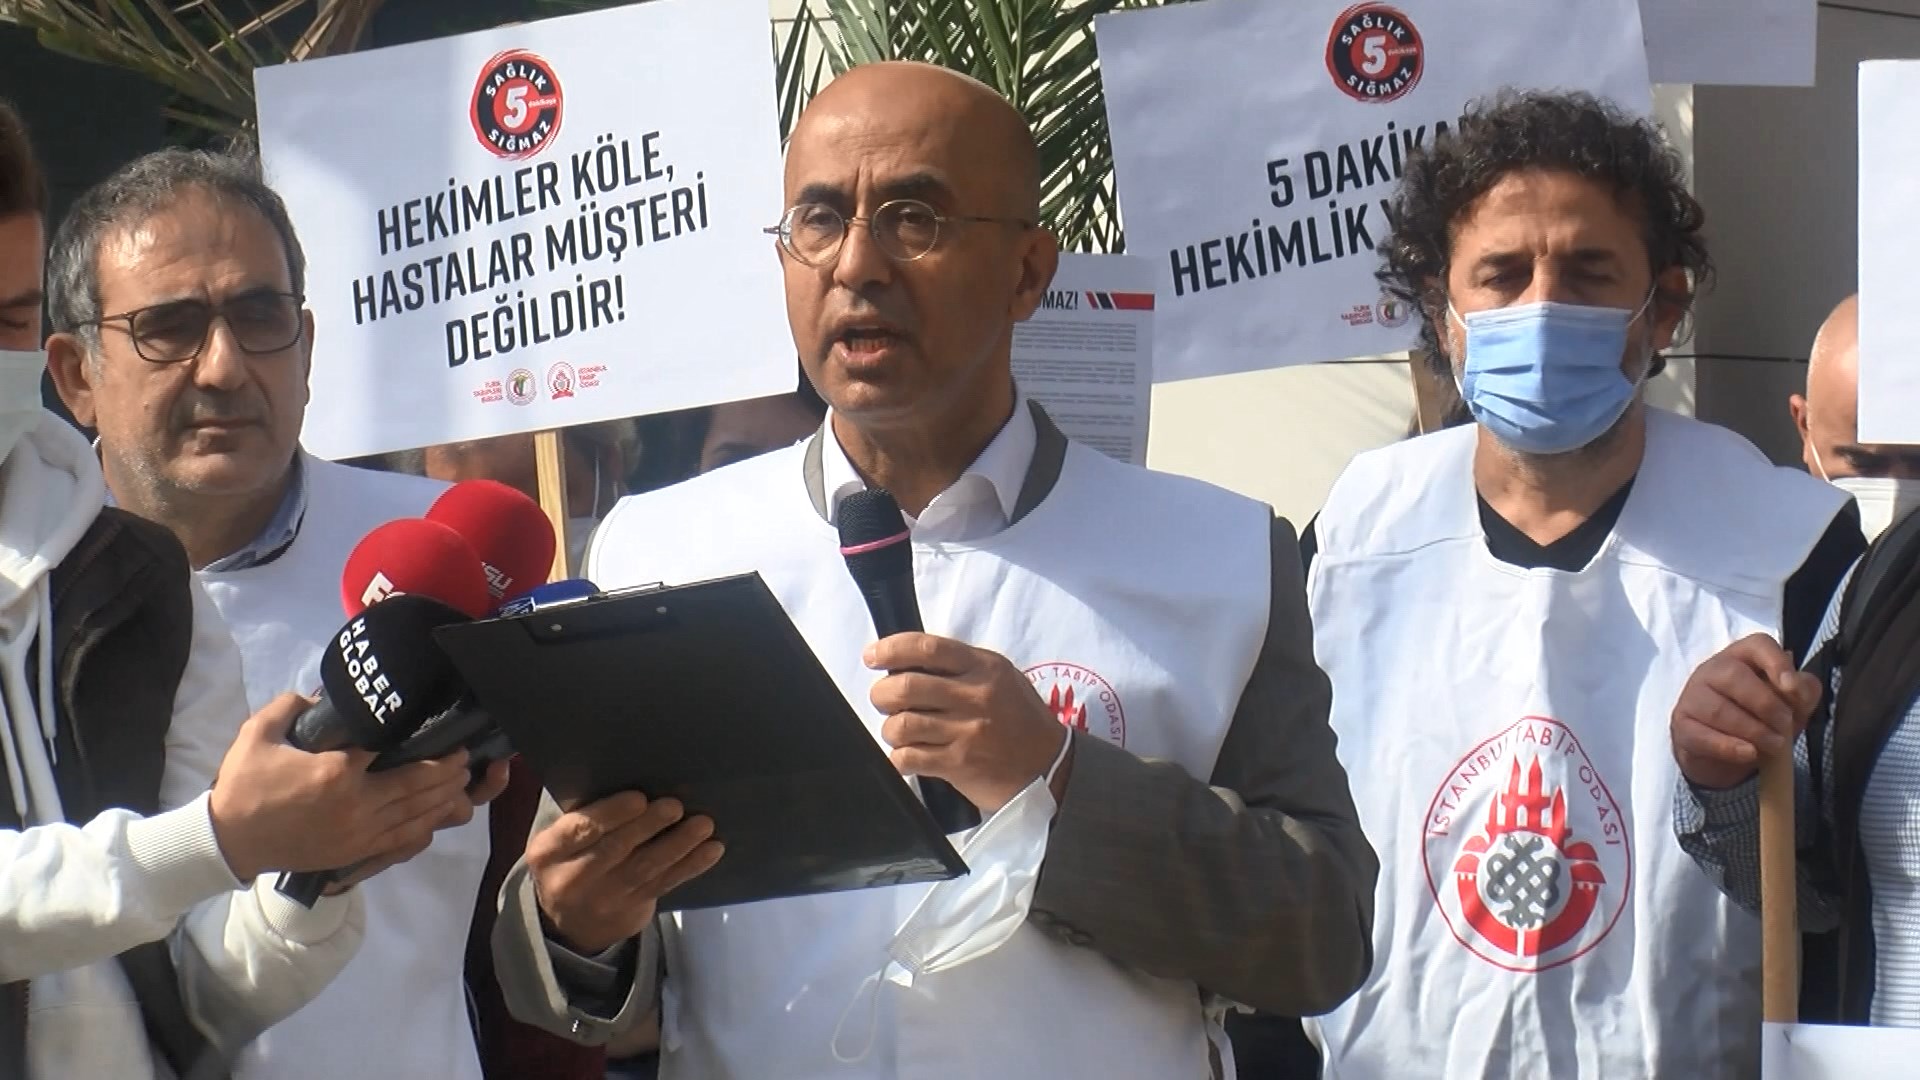 Doktorlardan Taksim'de protesto: "5 dakikada hekimlik yapılamaz"